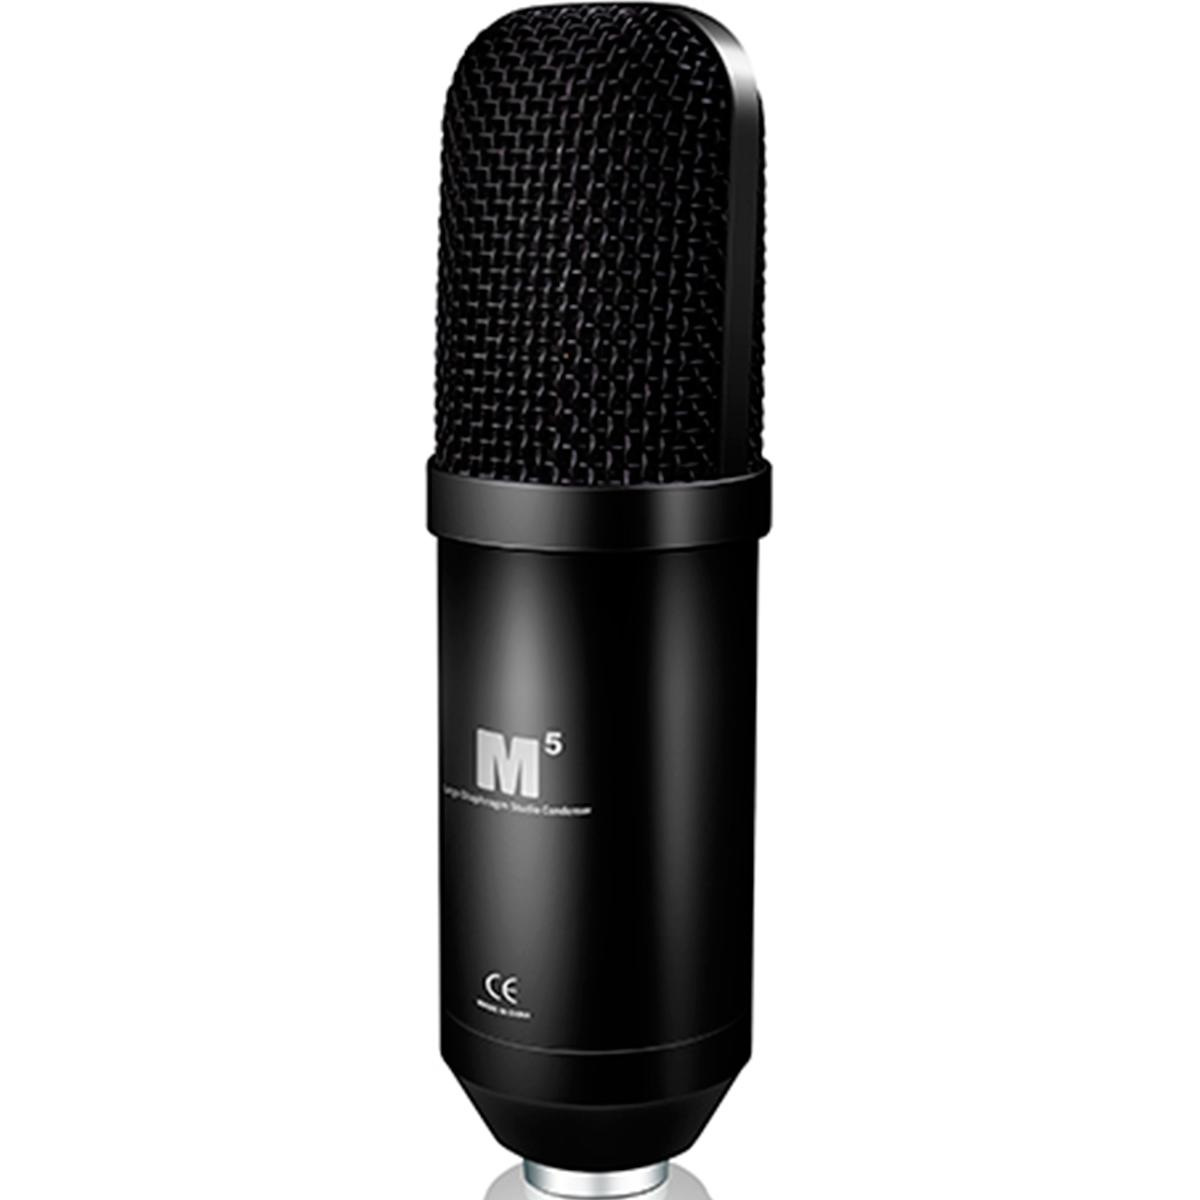 студийные микрофоны icon shield Студийные микрофоны iCON M5